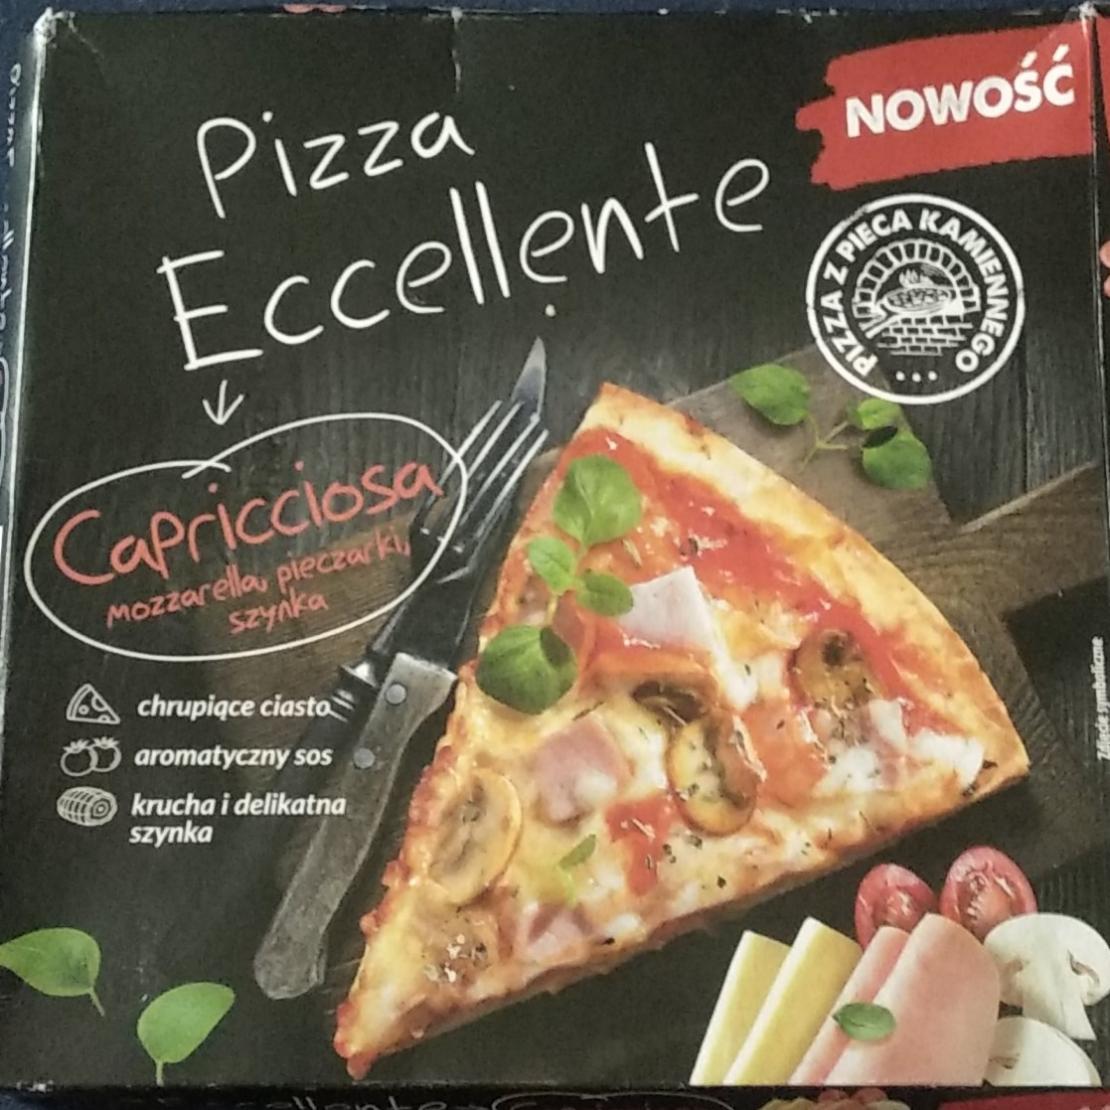 Fotografie - Capricciosa Pizza Eccellente Nowość